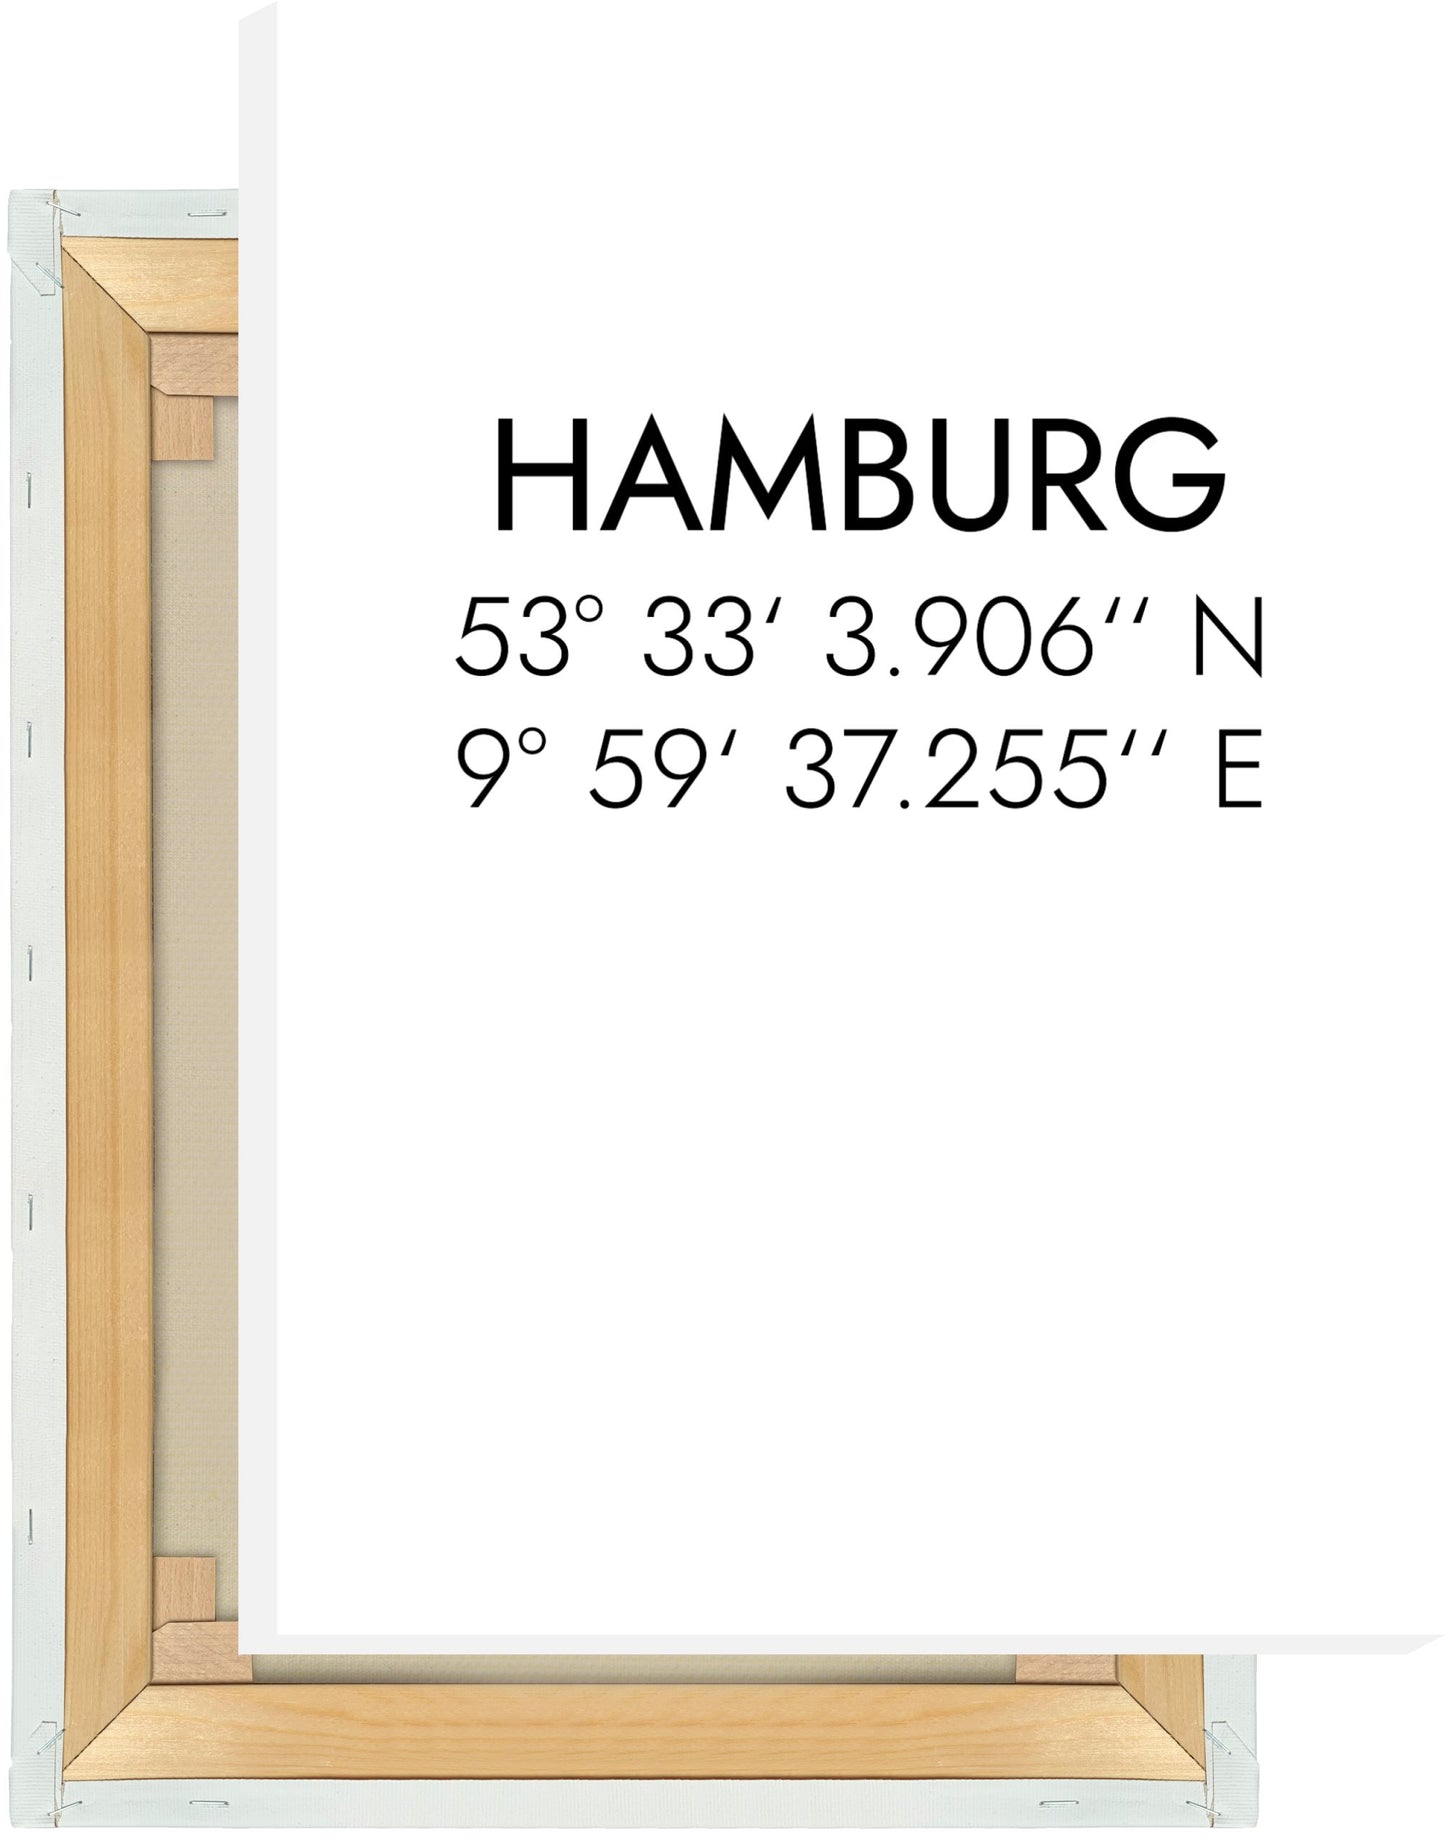 Leinwand Hamburg Koordinaten #1